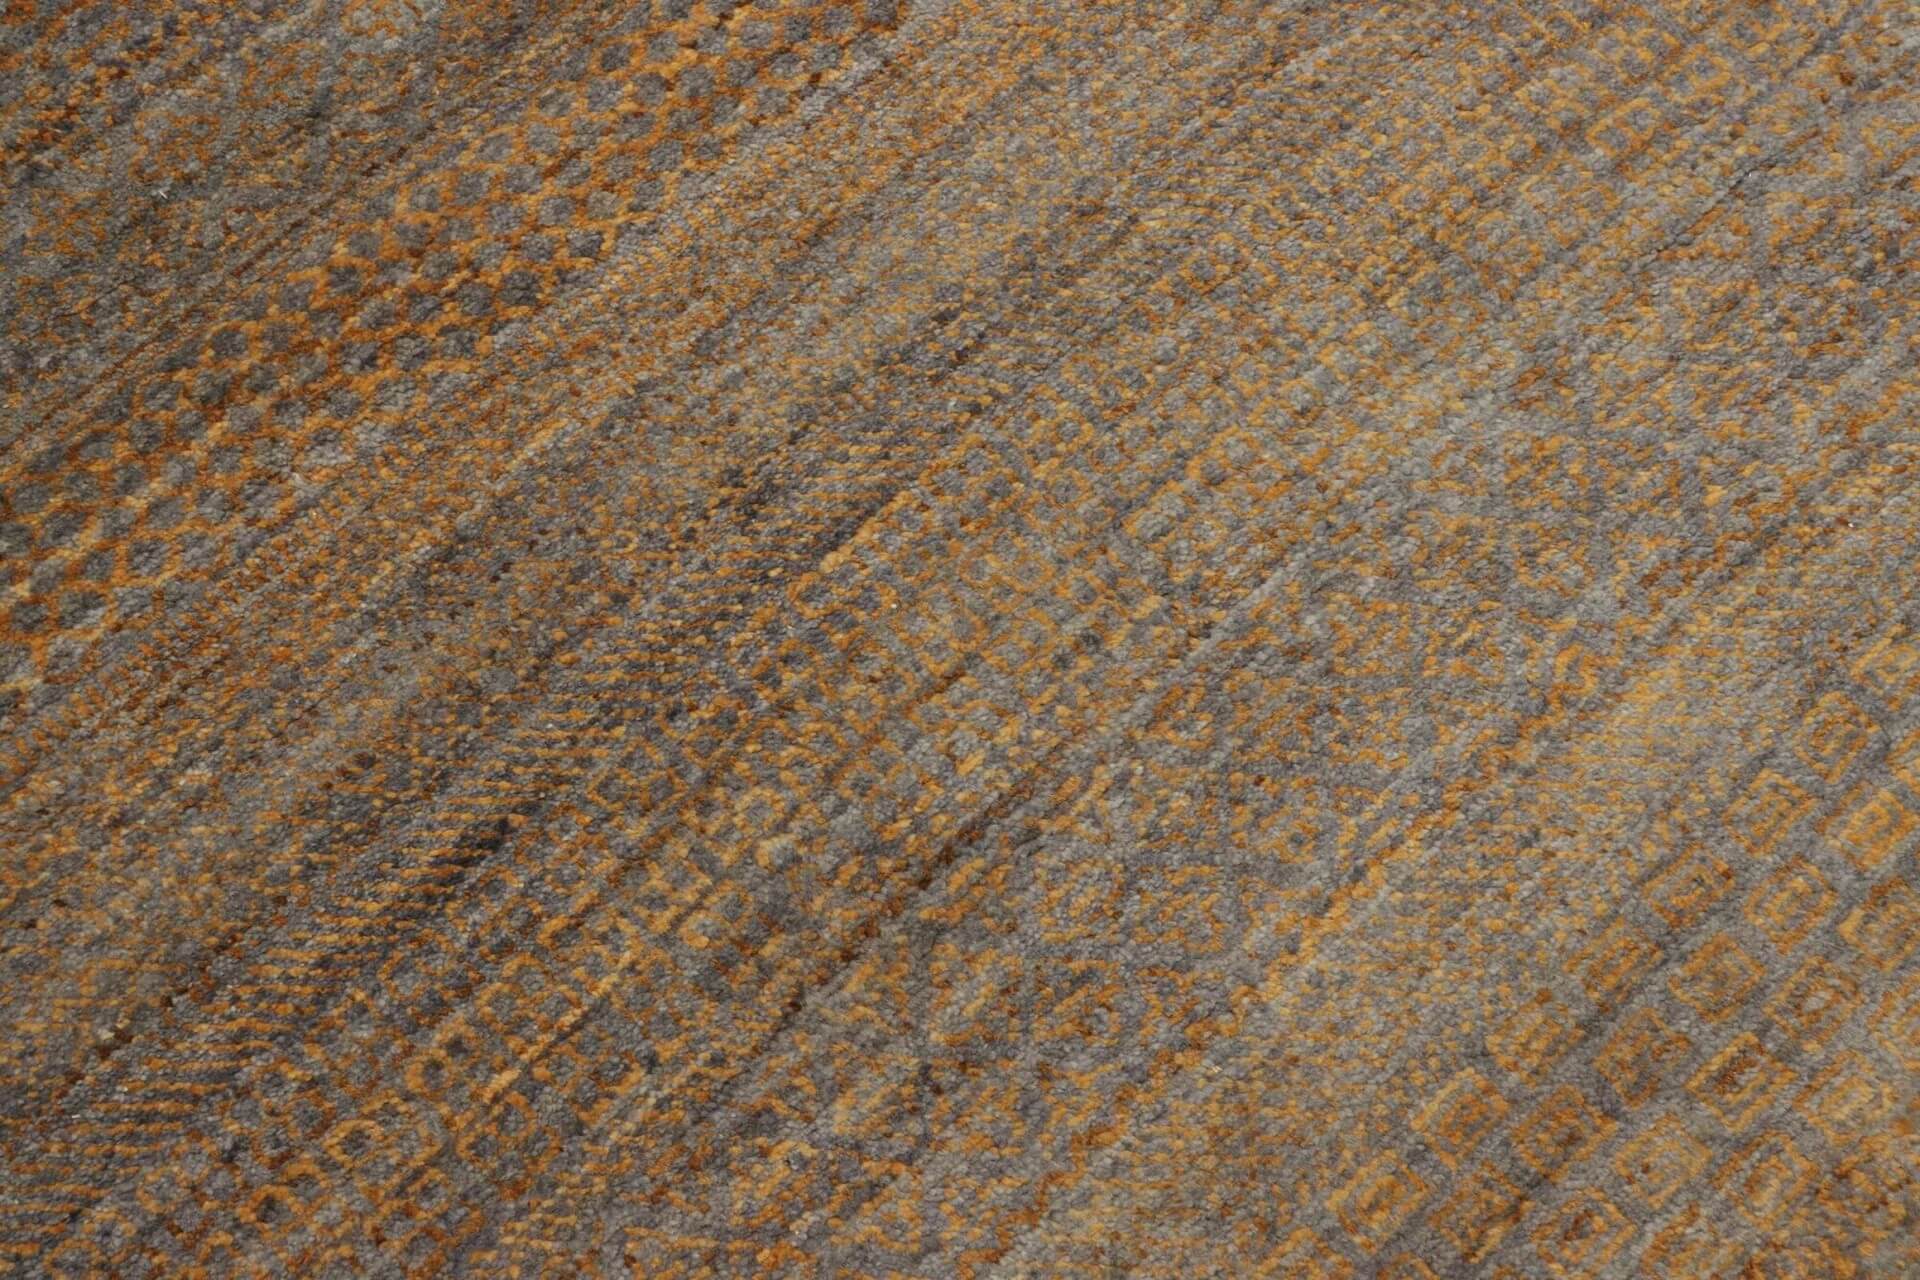 Afghanteppich MD.Royal Brown, handgeknüpft , Schurwolle, braun/mehrfarbig, 169 x 246 cm, Detailansicht